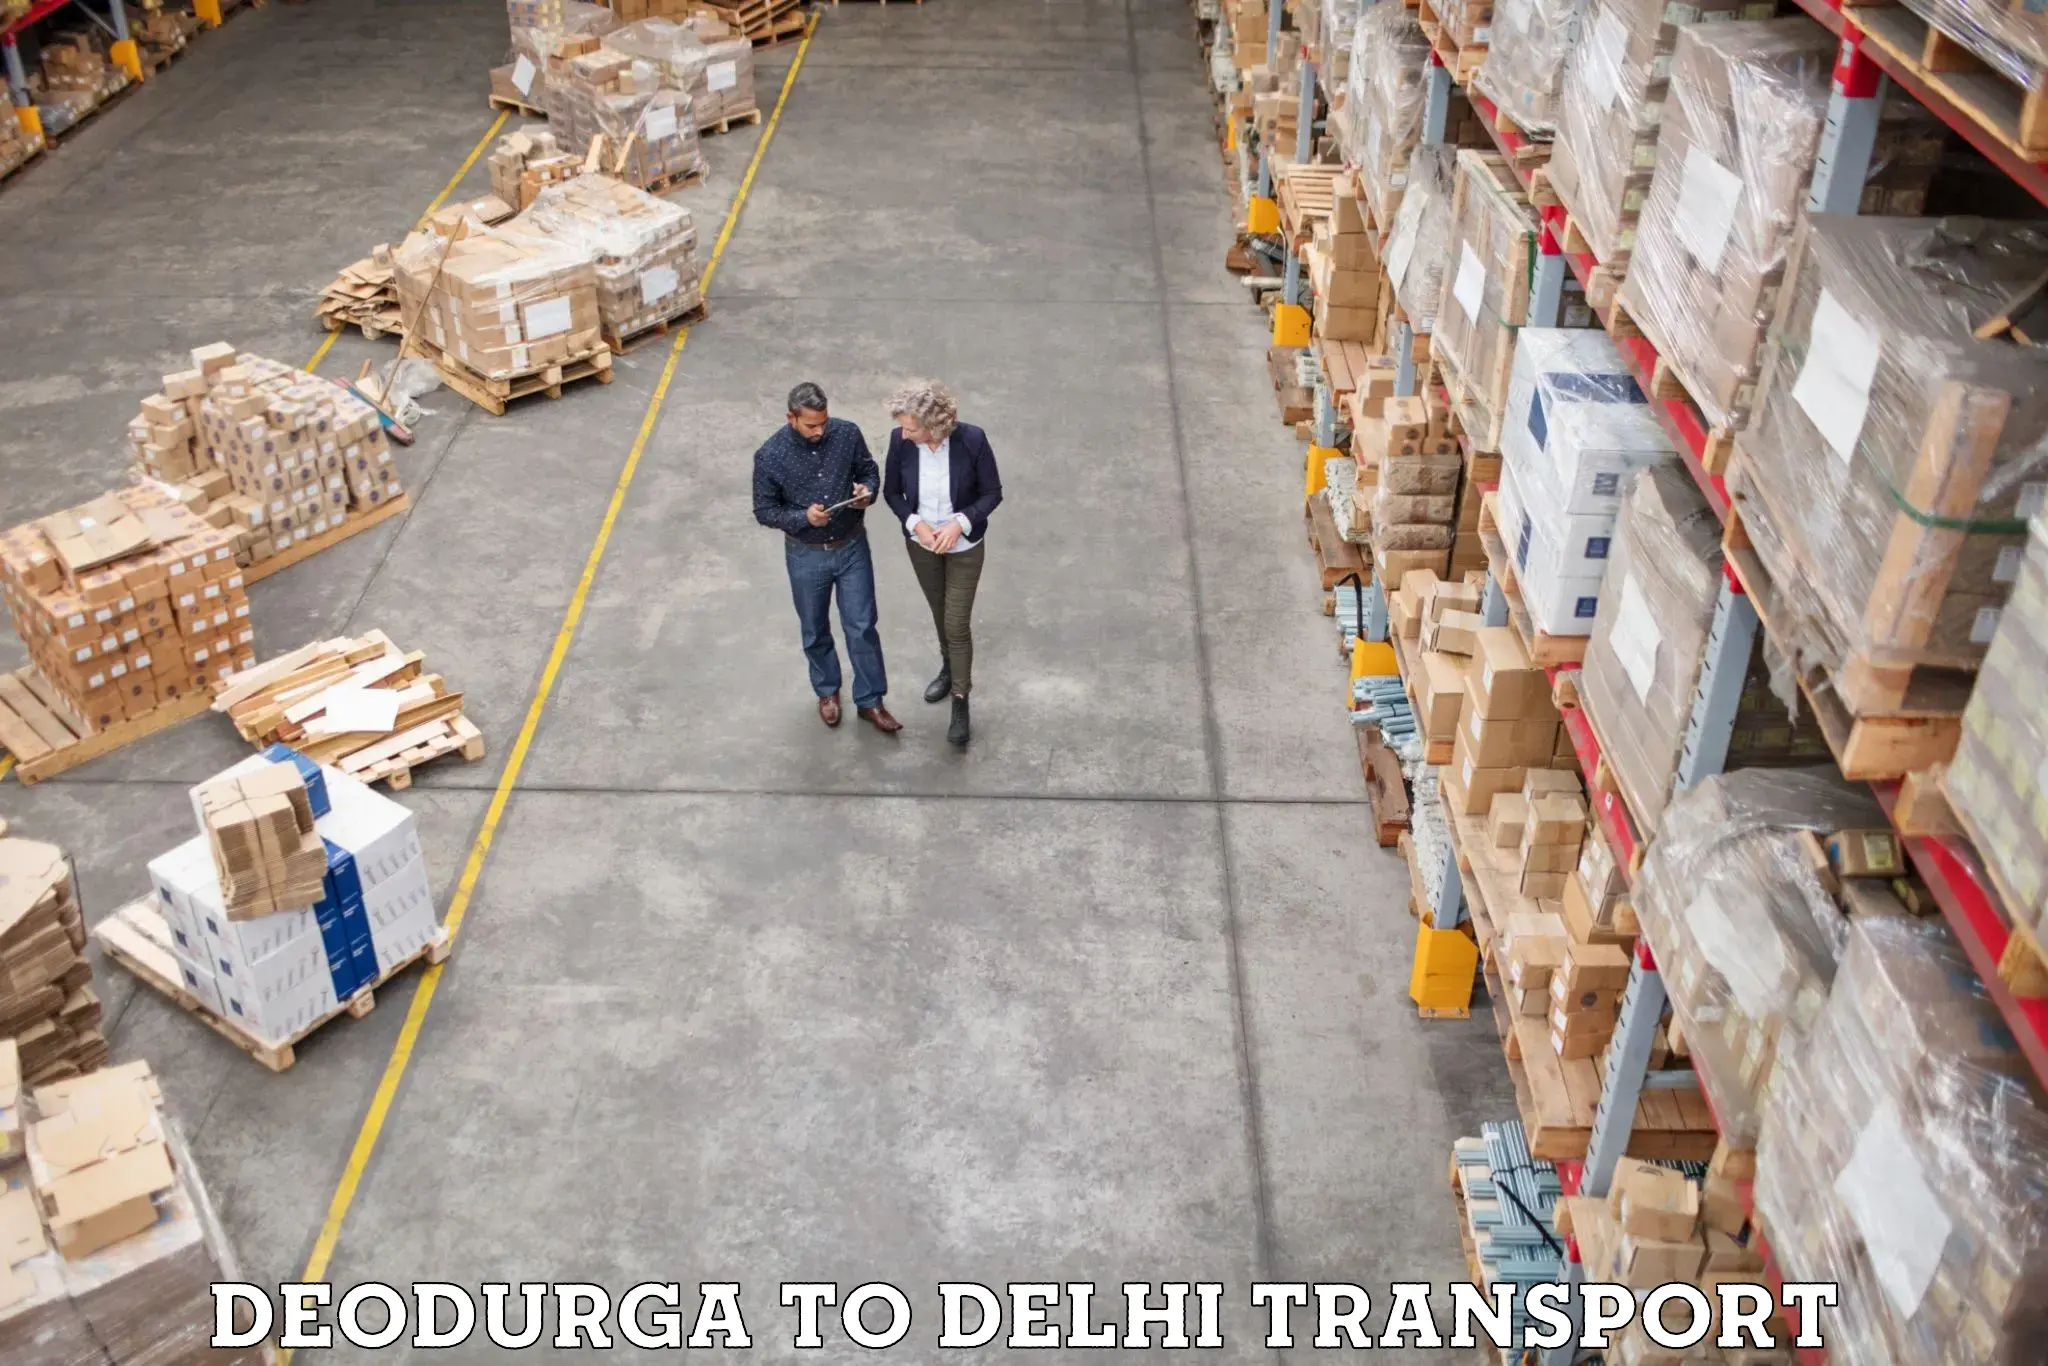 Road transport online services Deodurga to East Delhi